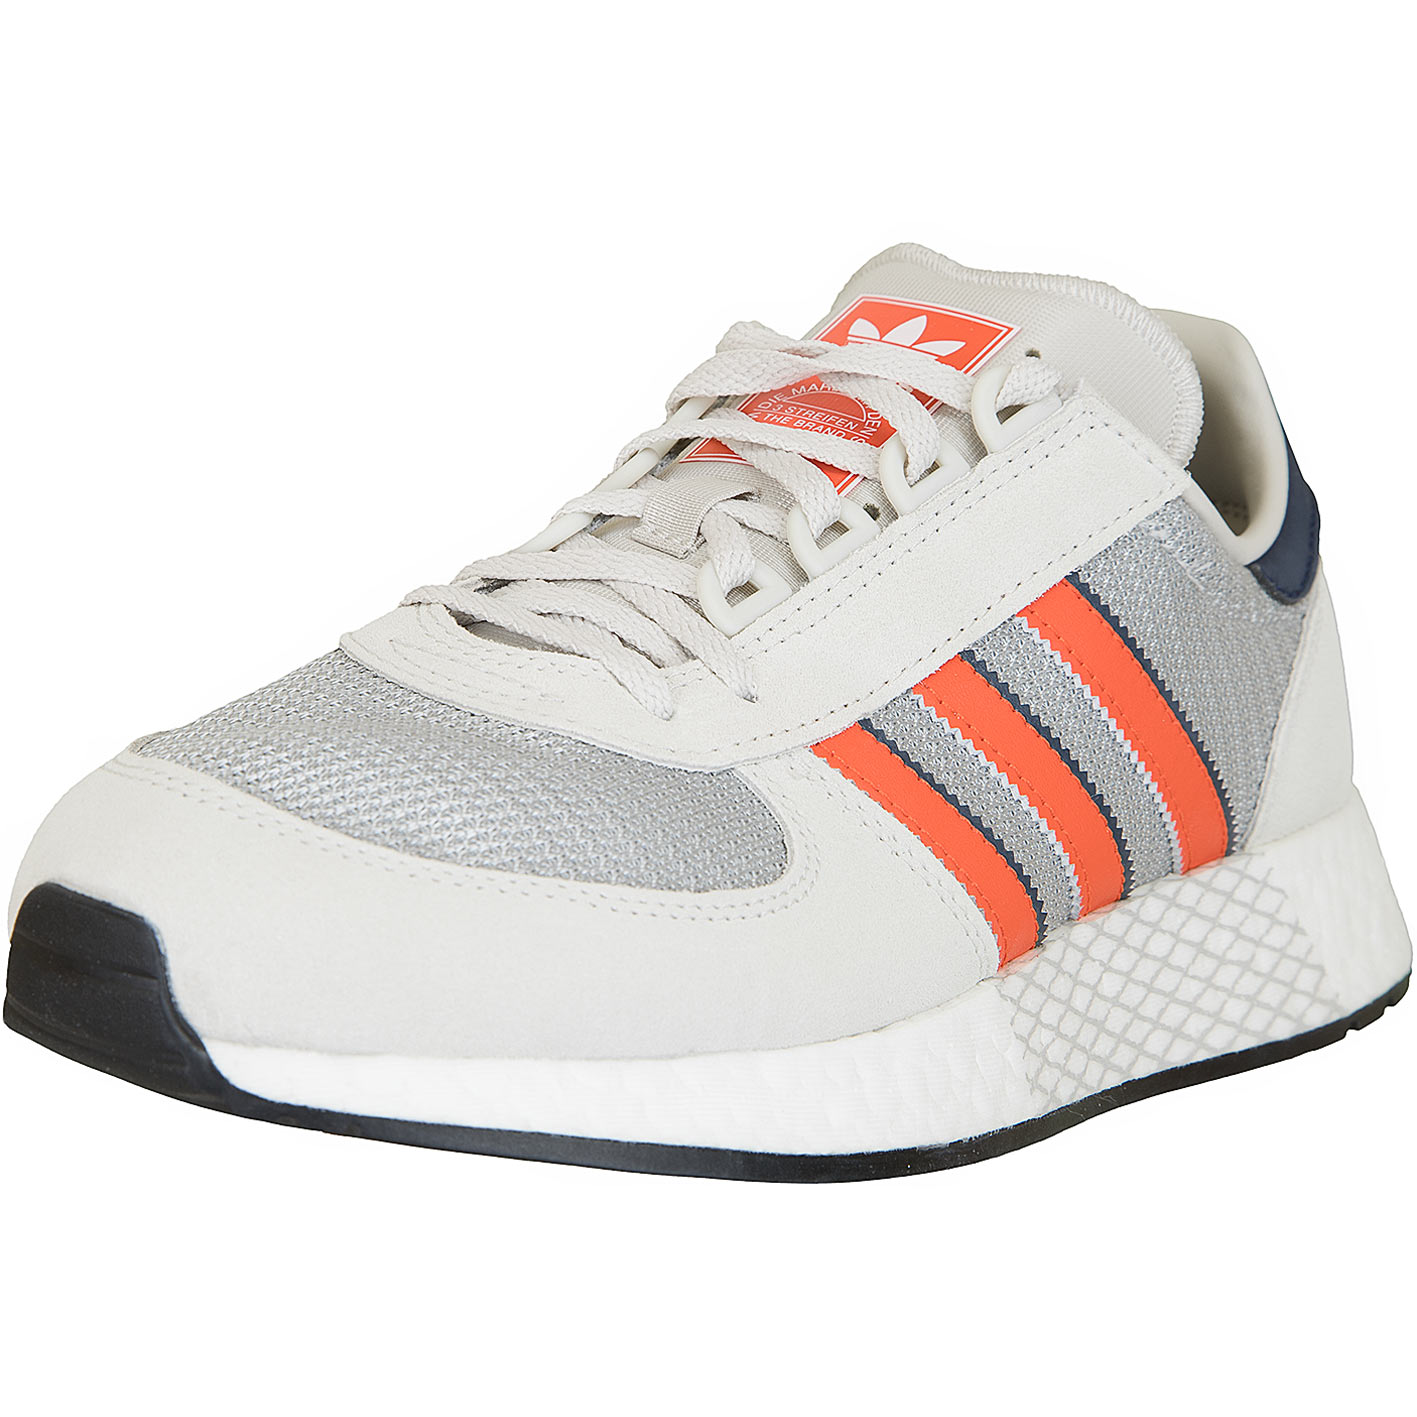 ☆ Adidas Originals Sneaker Marathon Tech weiß/orange - hier bestellen!